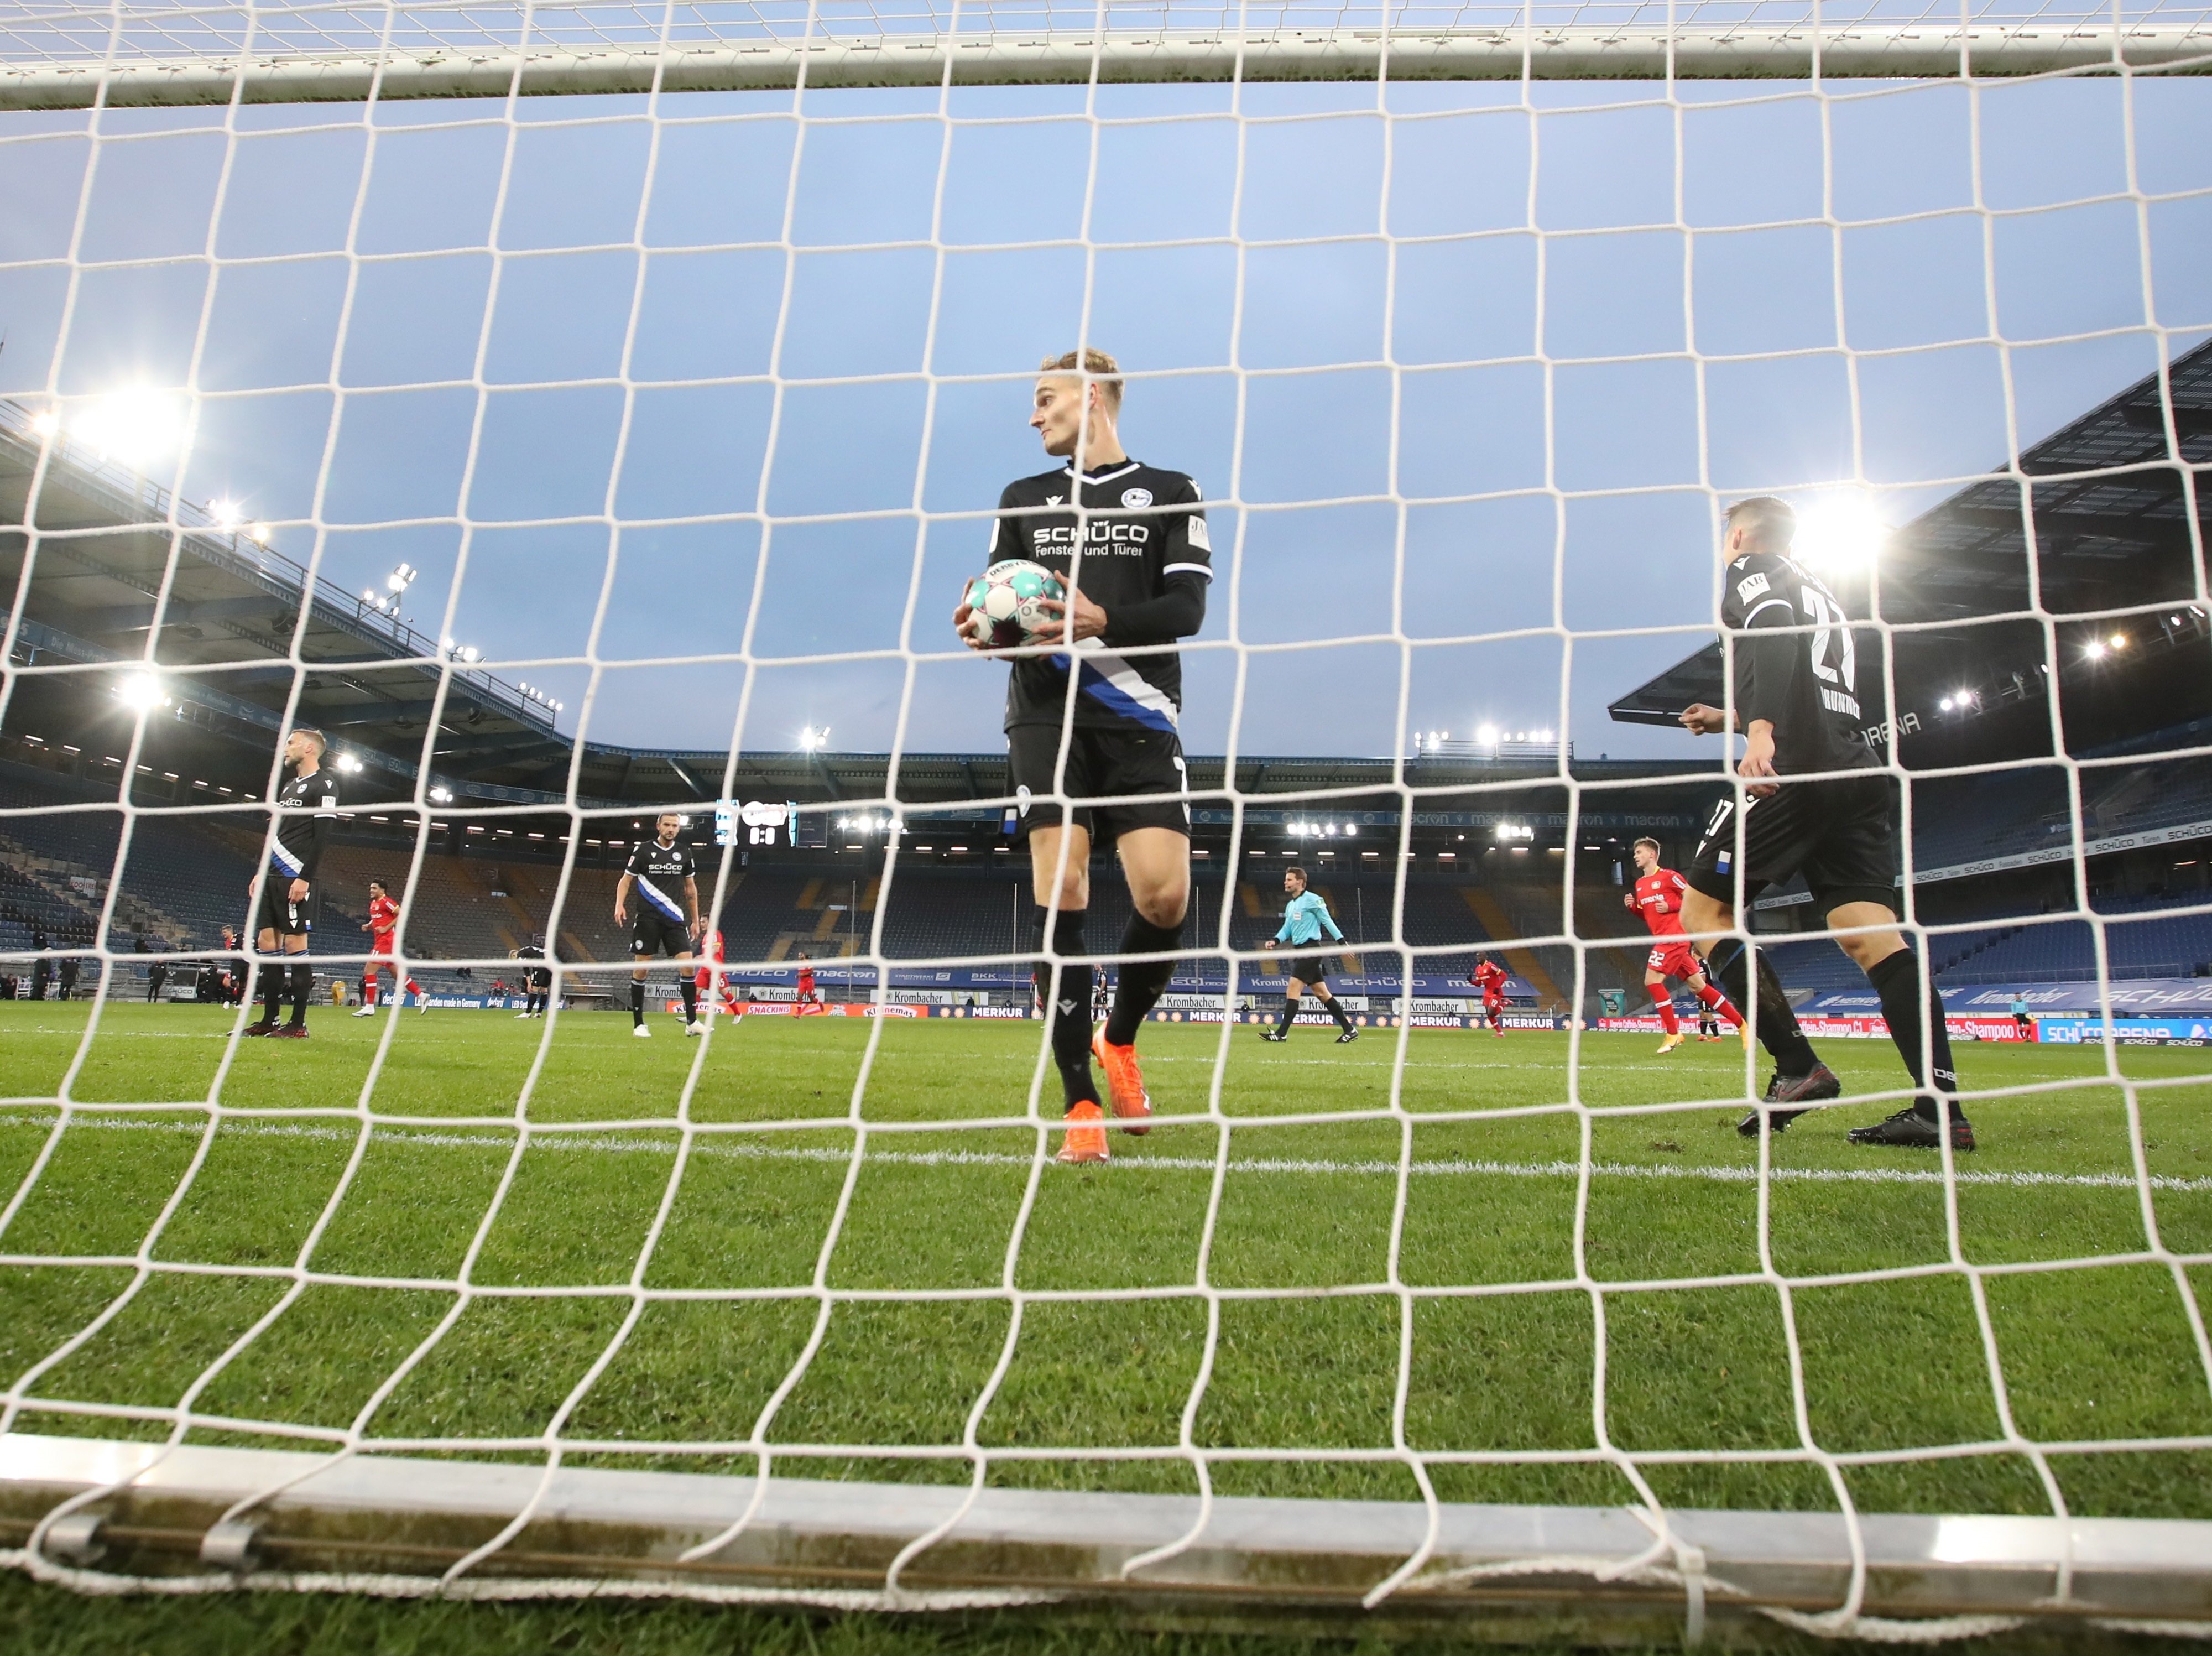 No es perdi la pífia de l'any a Alemanya: autogol inversemblant del Leverkusen